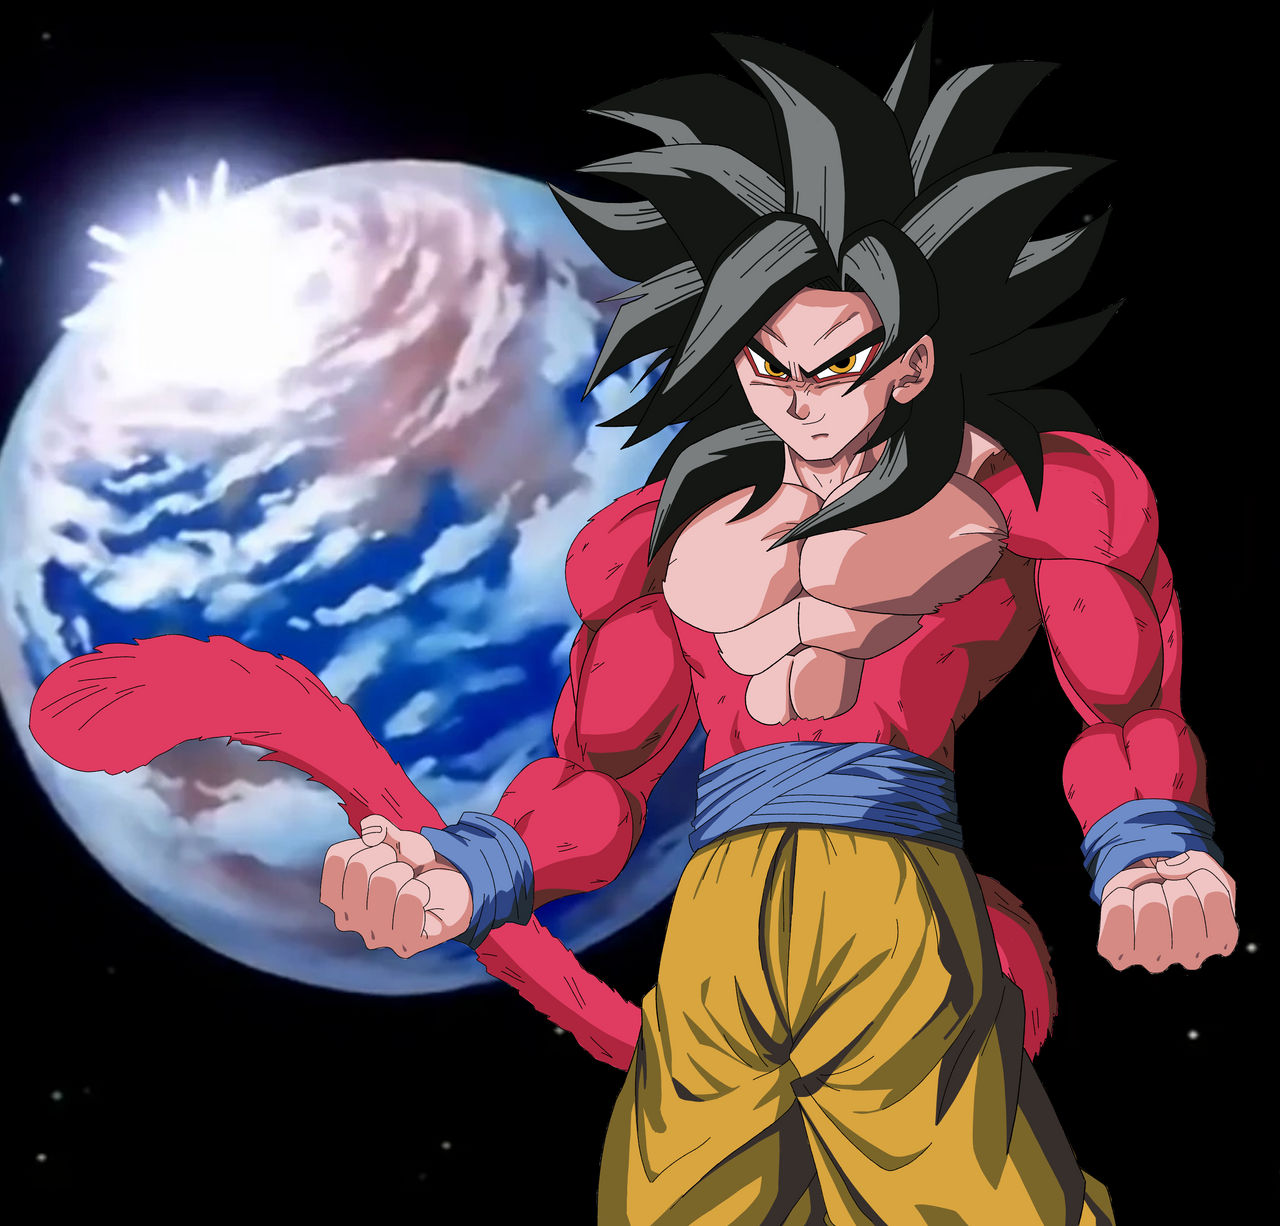 Super Saiyan 4 Goku by GenkidamaZero on DeviantArt